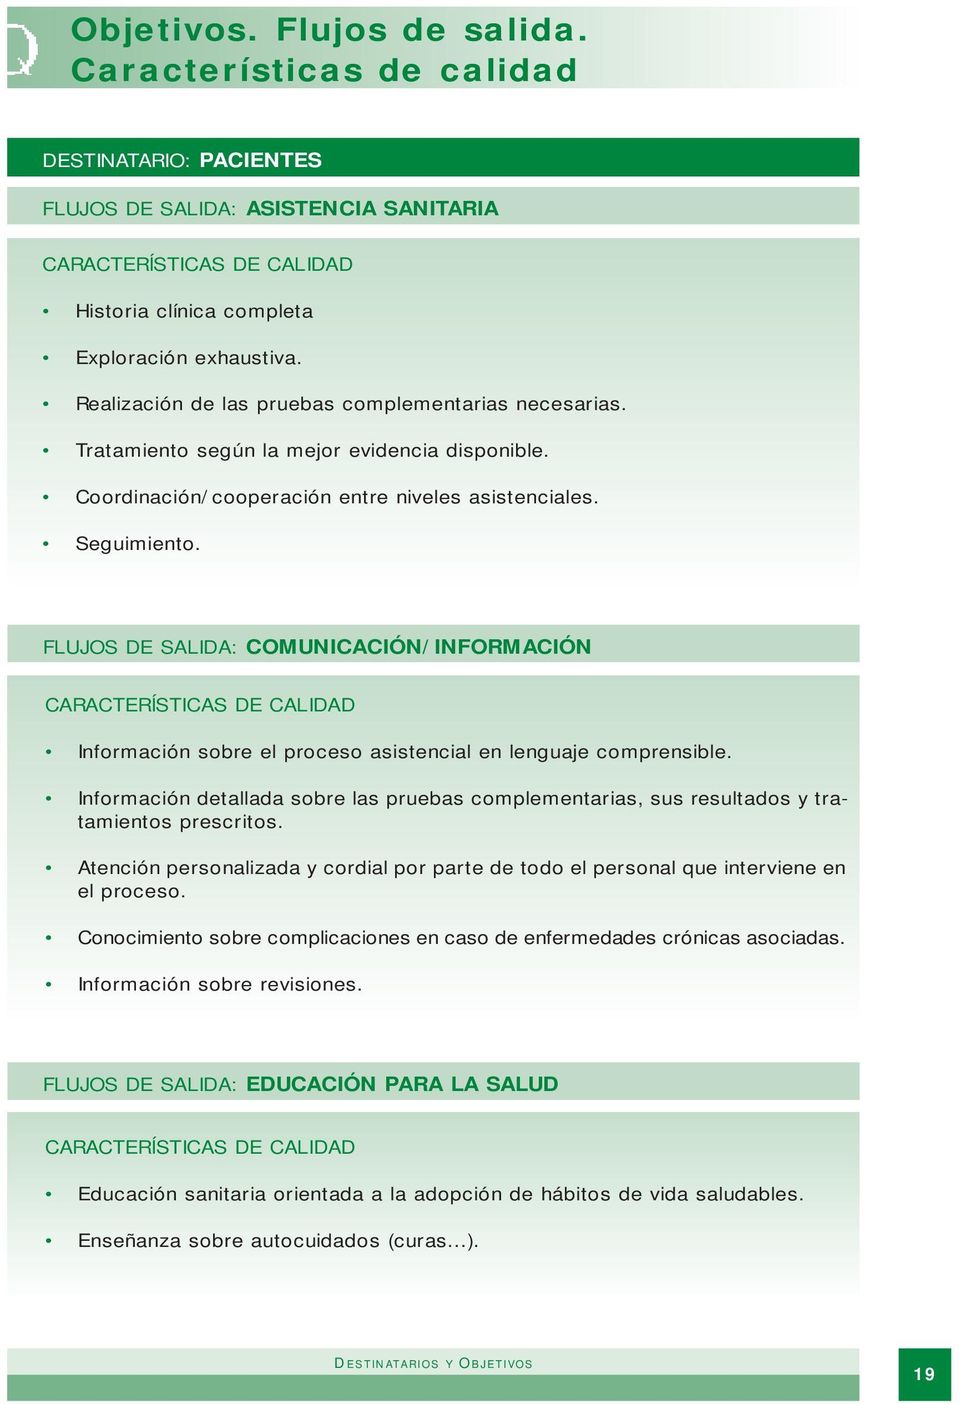 FLUJOS DE SALIDA: COMUNICACIÓN/INFORMACIÓN Información sobre el proceso asistencial en lenguaje comprensible.